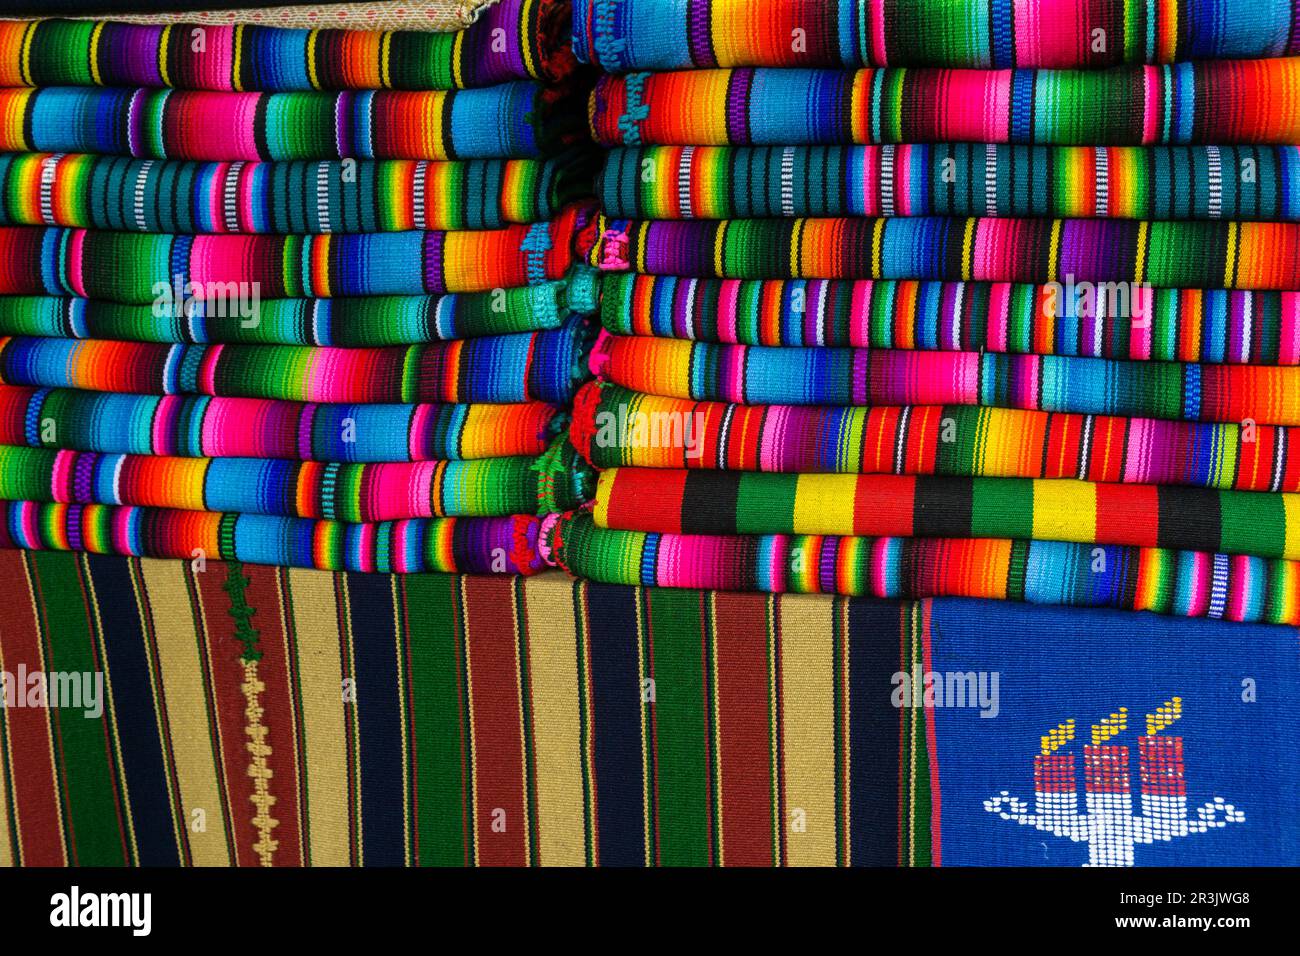 tejidos tipicos, Chichicastenango ,municipio del departamento de El Quiché, Guatemala, Central America. Stock Photo